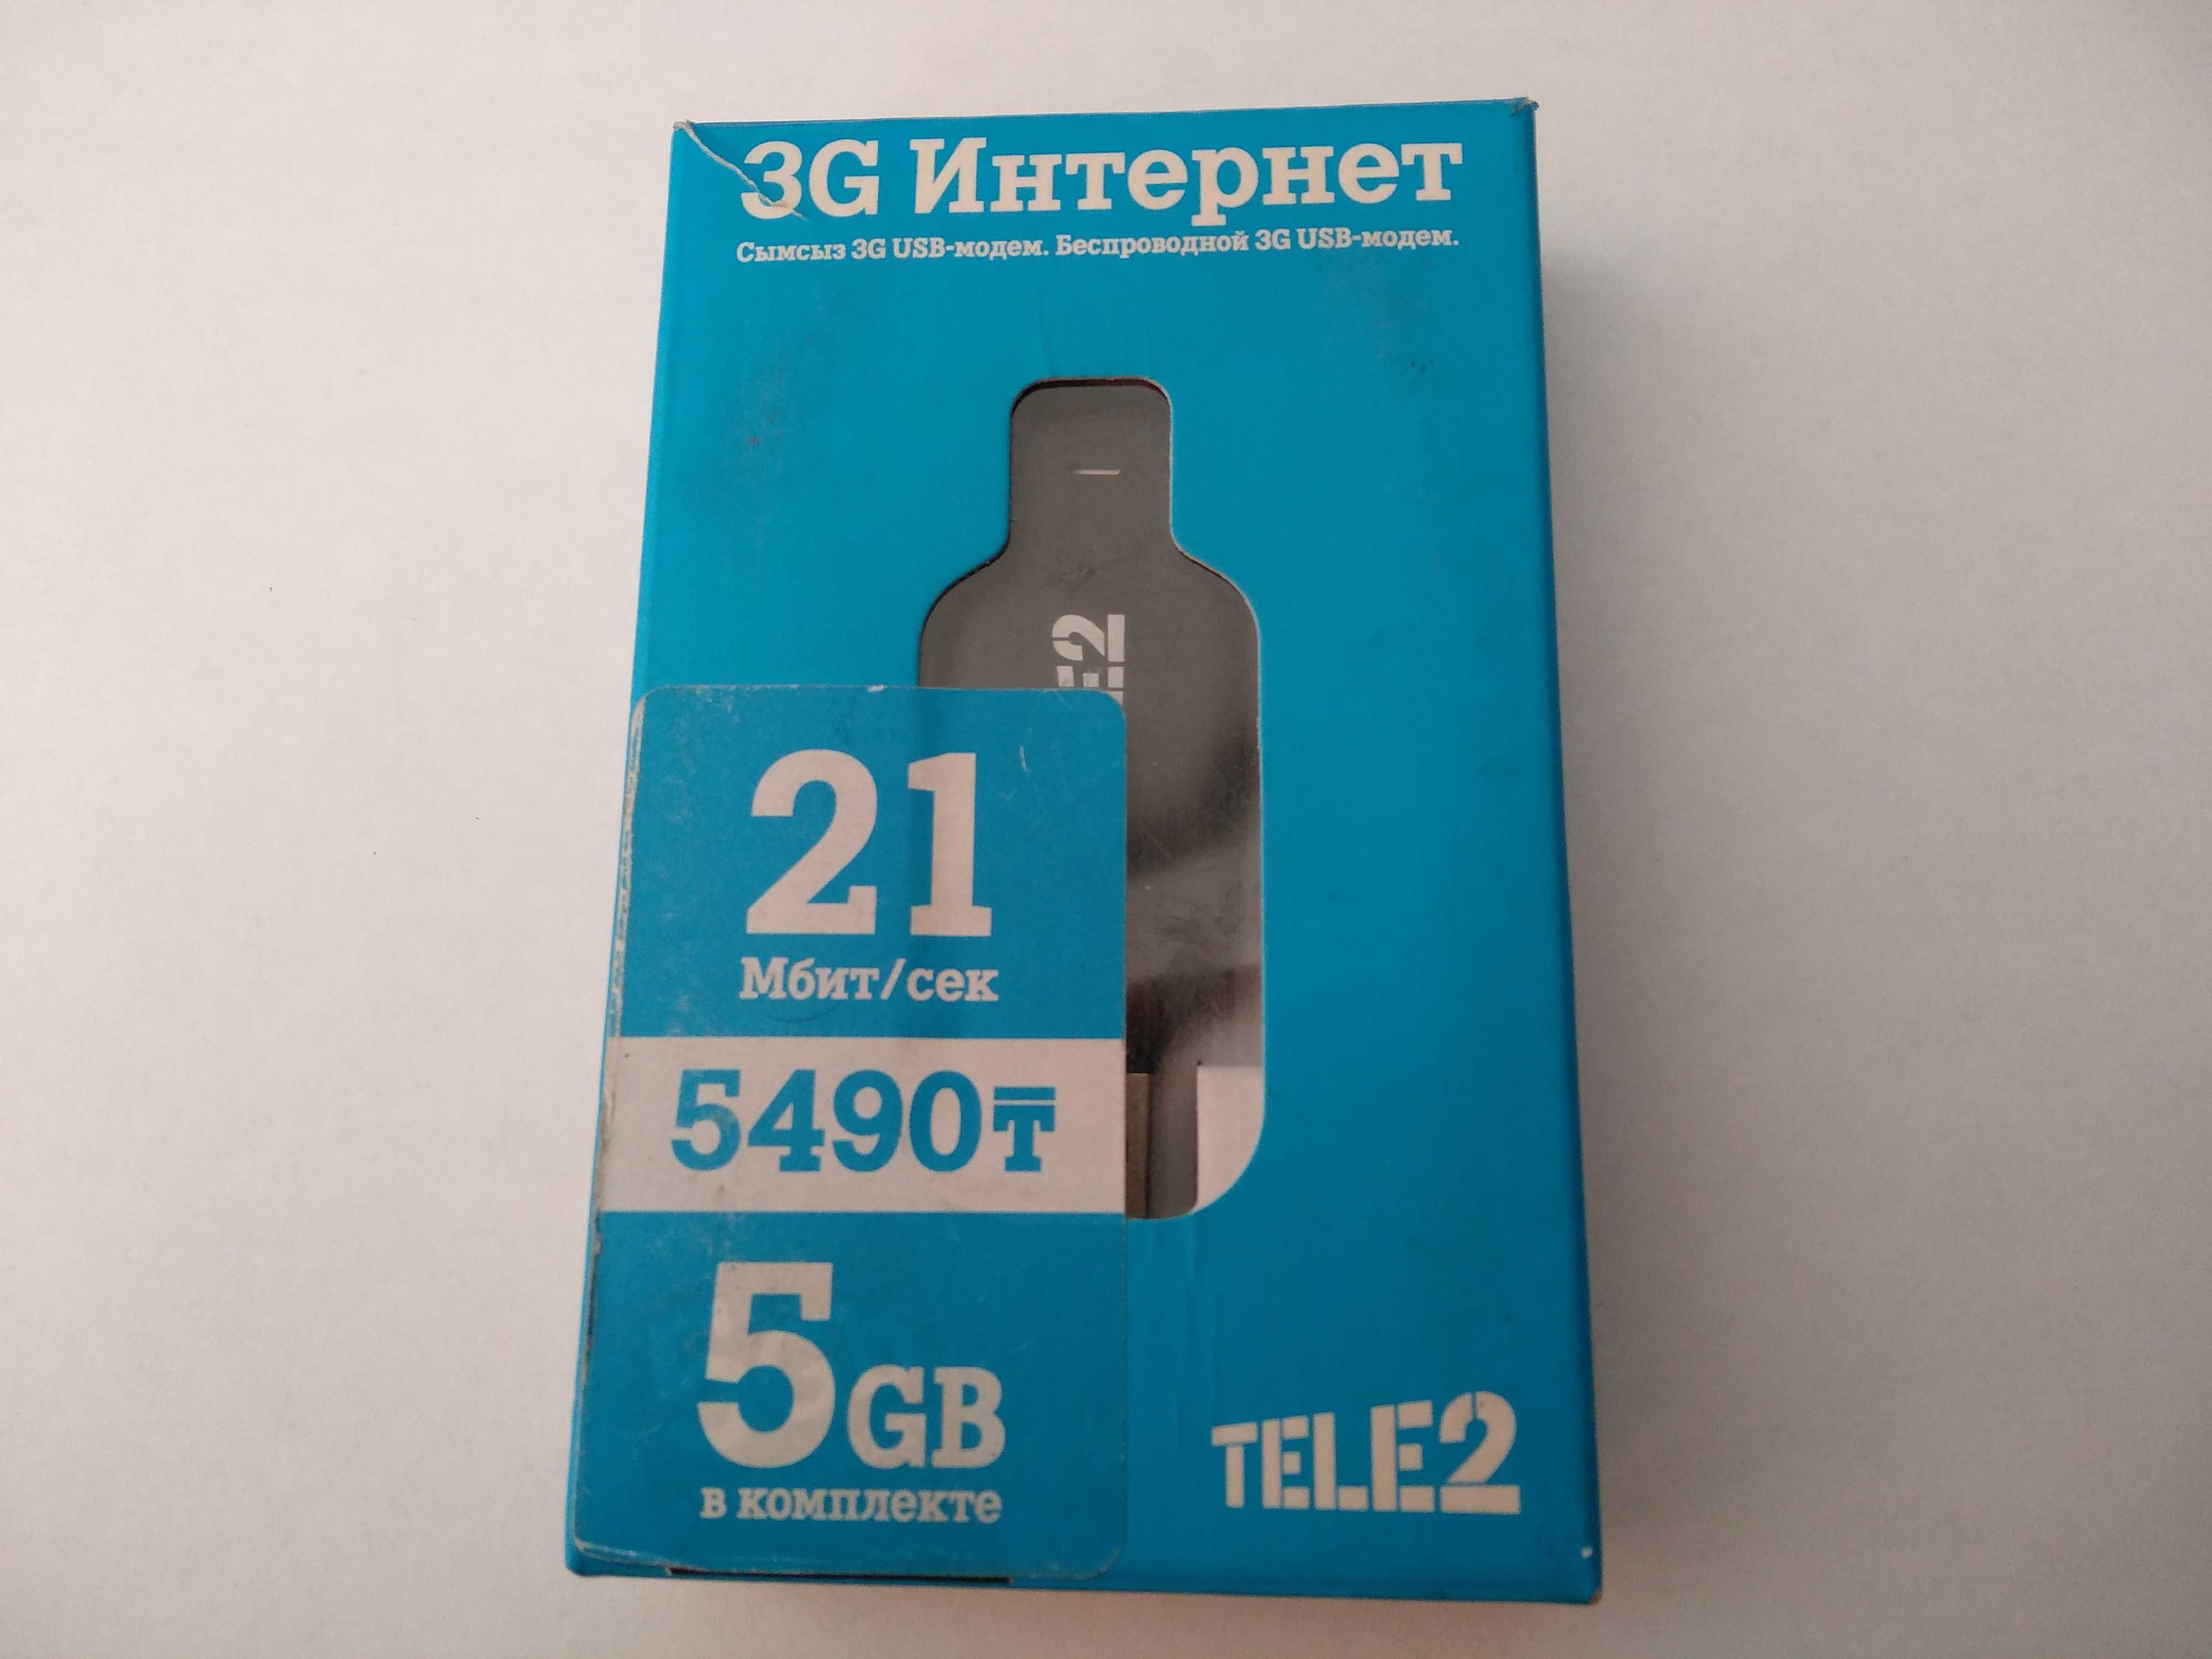 3G USB модем разлоченный под любого оператора